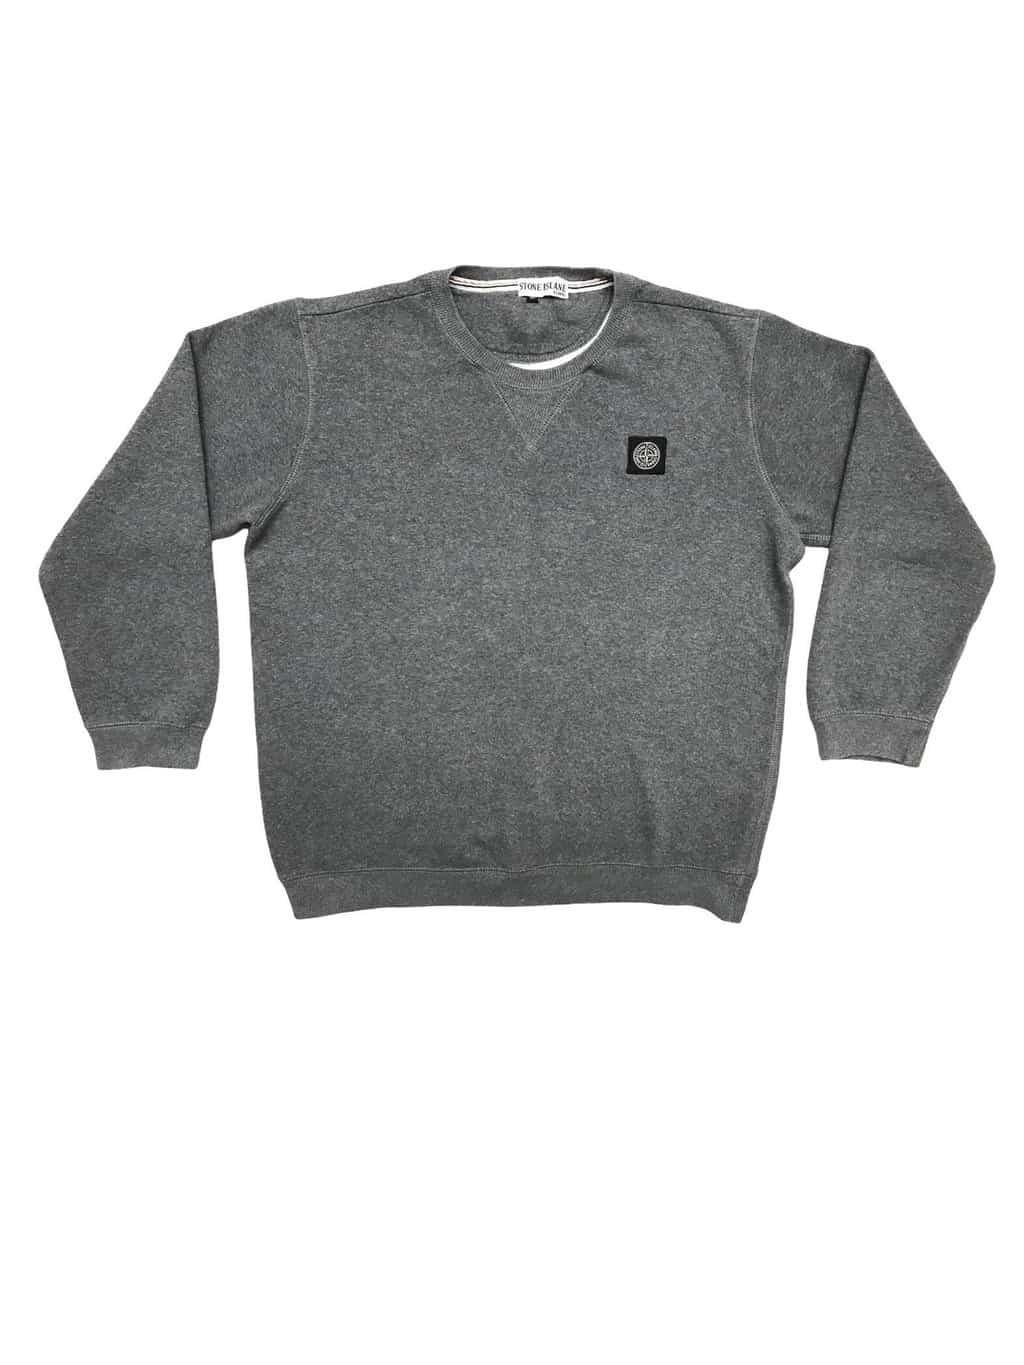 Stone Island Sweatshirt in Grey with Chest Logo - St Cyr Vintage